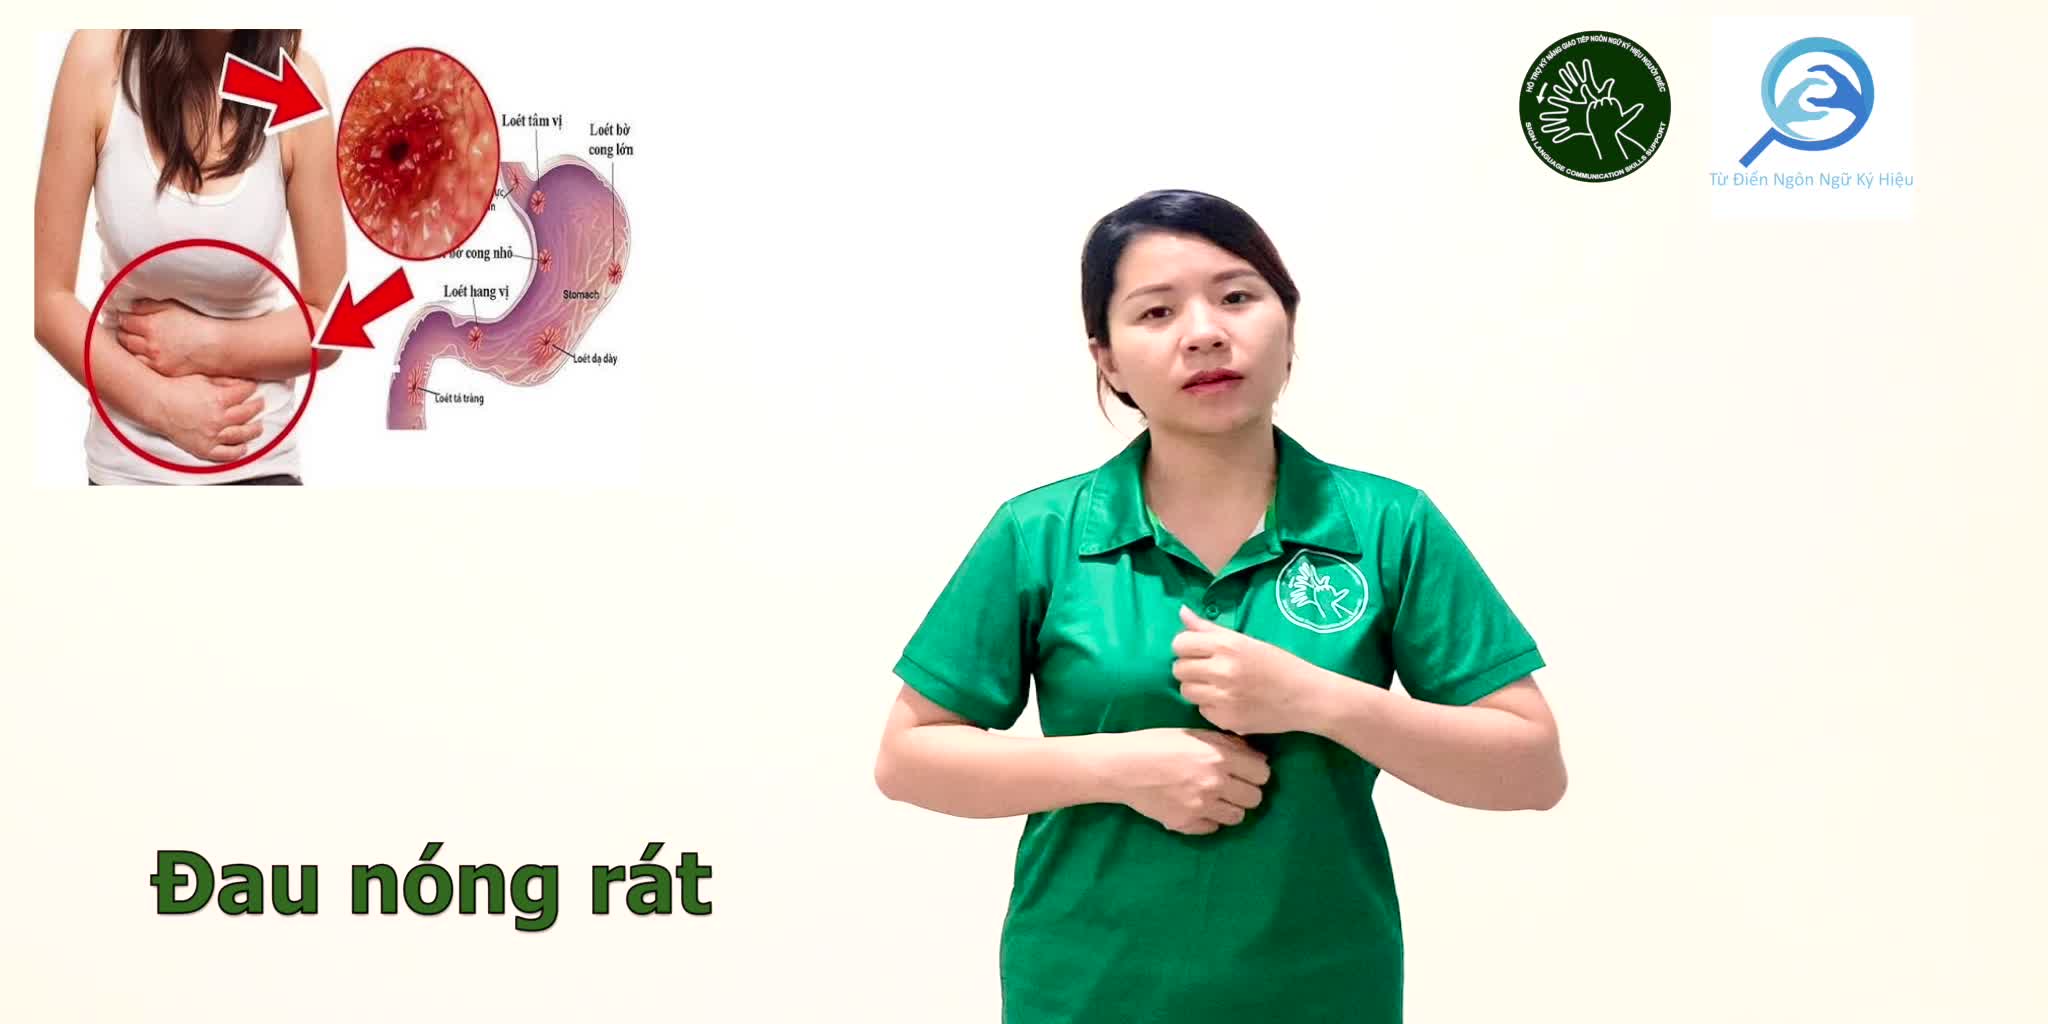 dau-nong-rat-7566